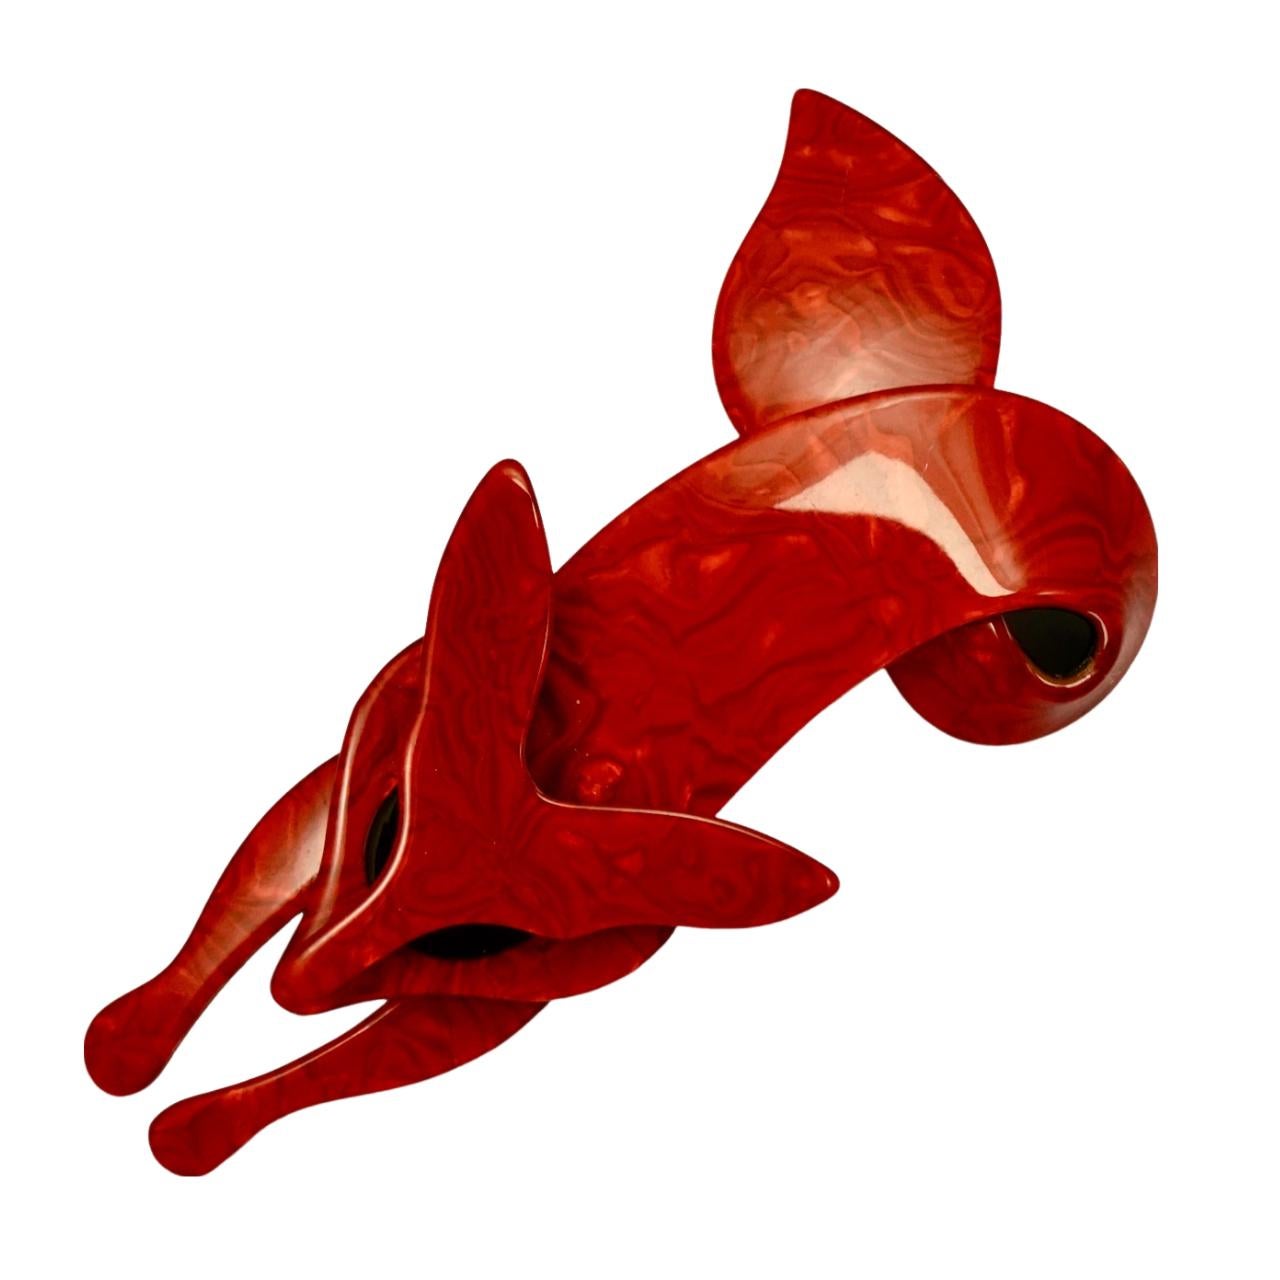 Broche Lea Stein de zorro rojo con ojos negros en muy buen estado y con un precioso diseño jaspeado. El broche es de plástico estratificado y mide 9,5 cm de largo por 5,7 cm de ancho máximo.

Se trata de un precioso broche de zorro rojo jaspeado de